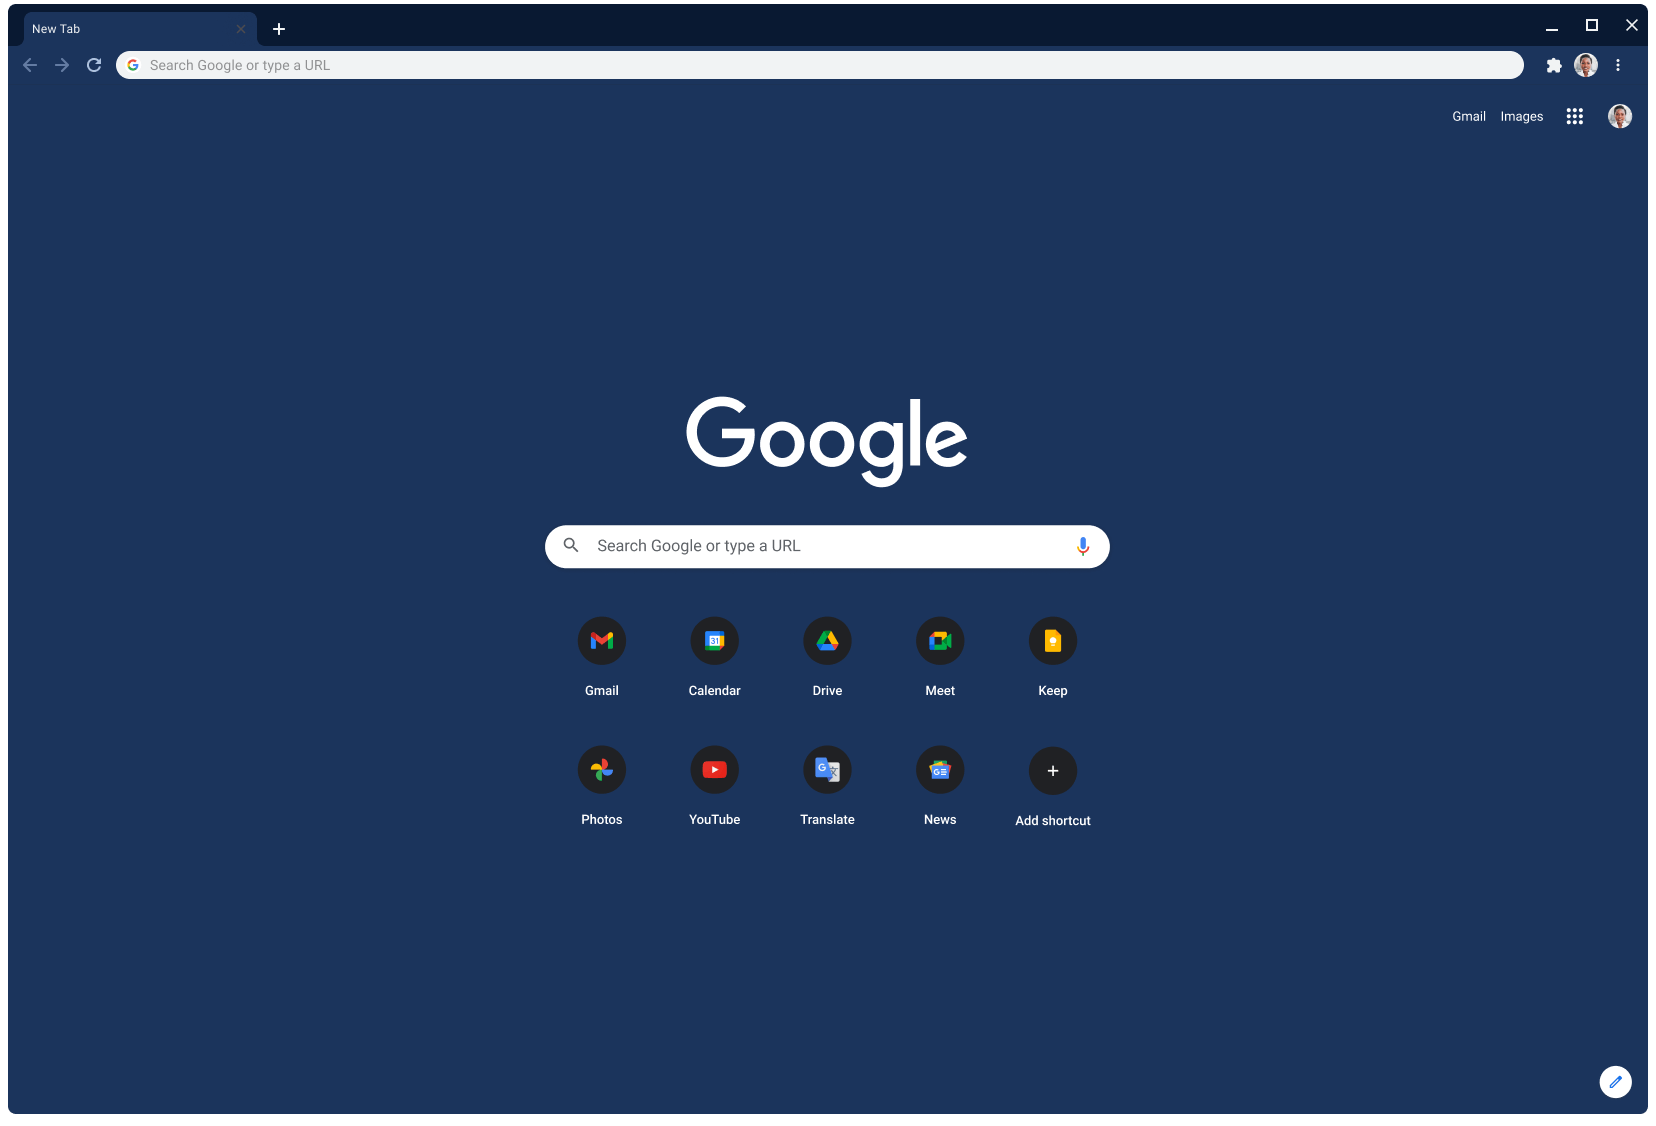 Cửa sổ trình duyệt Chrome đang hiển thị Google.com với giao diện xám đen.